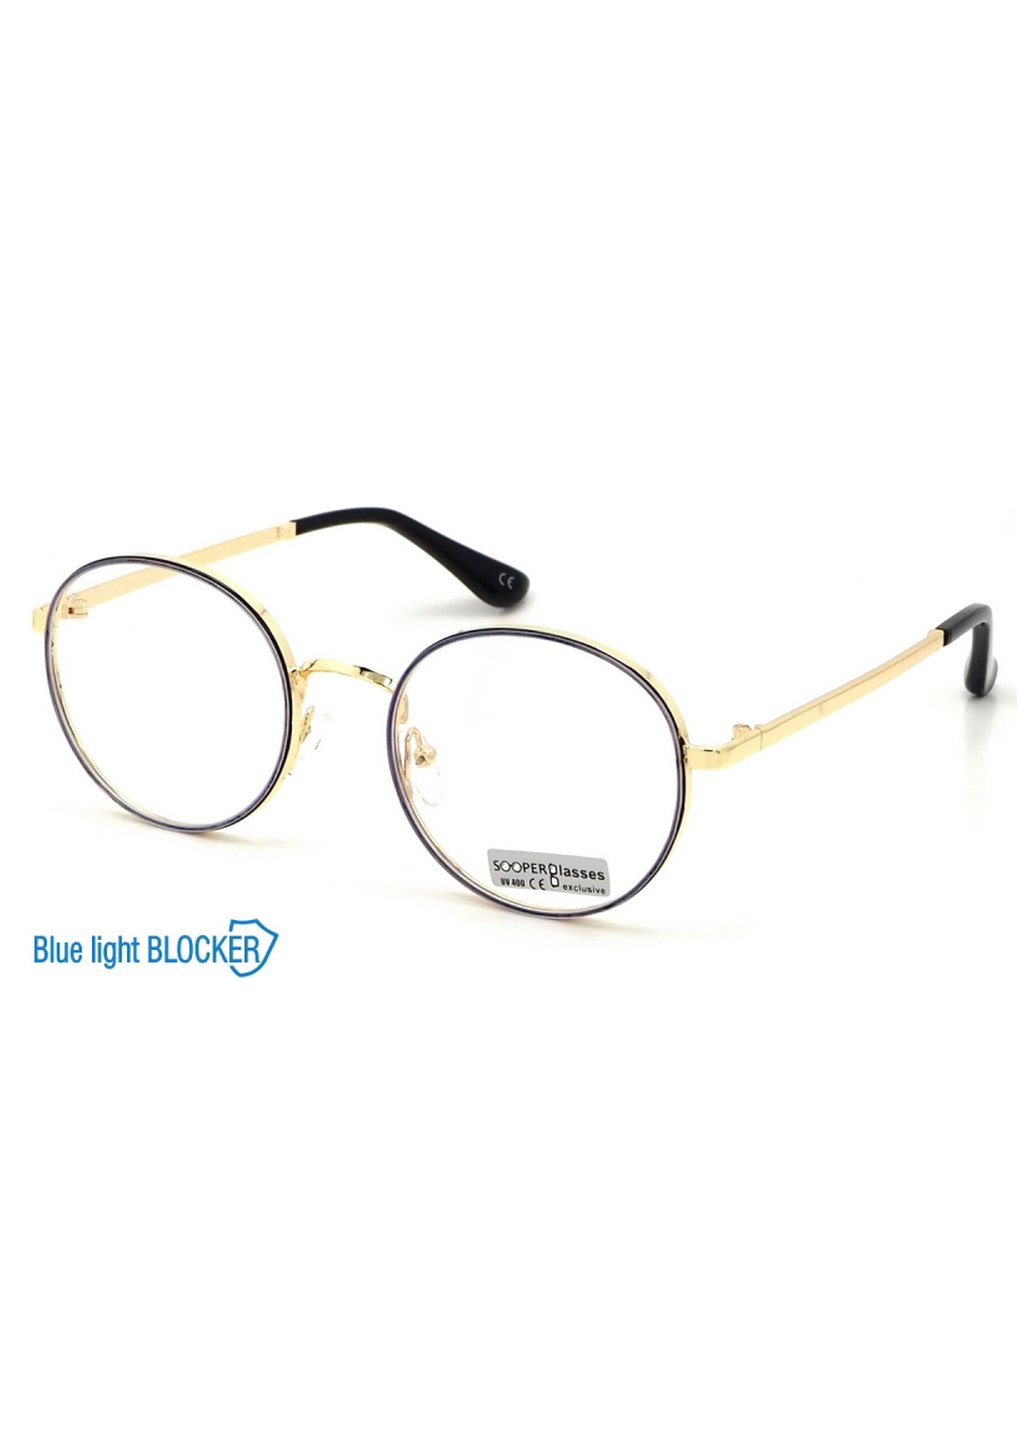 Купить Очки для работы за компьютером Cooper Glasses в золотой оправе 124015 в интернет-магазине